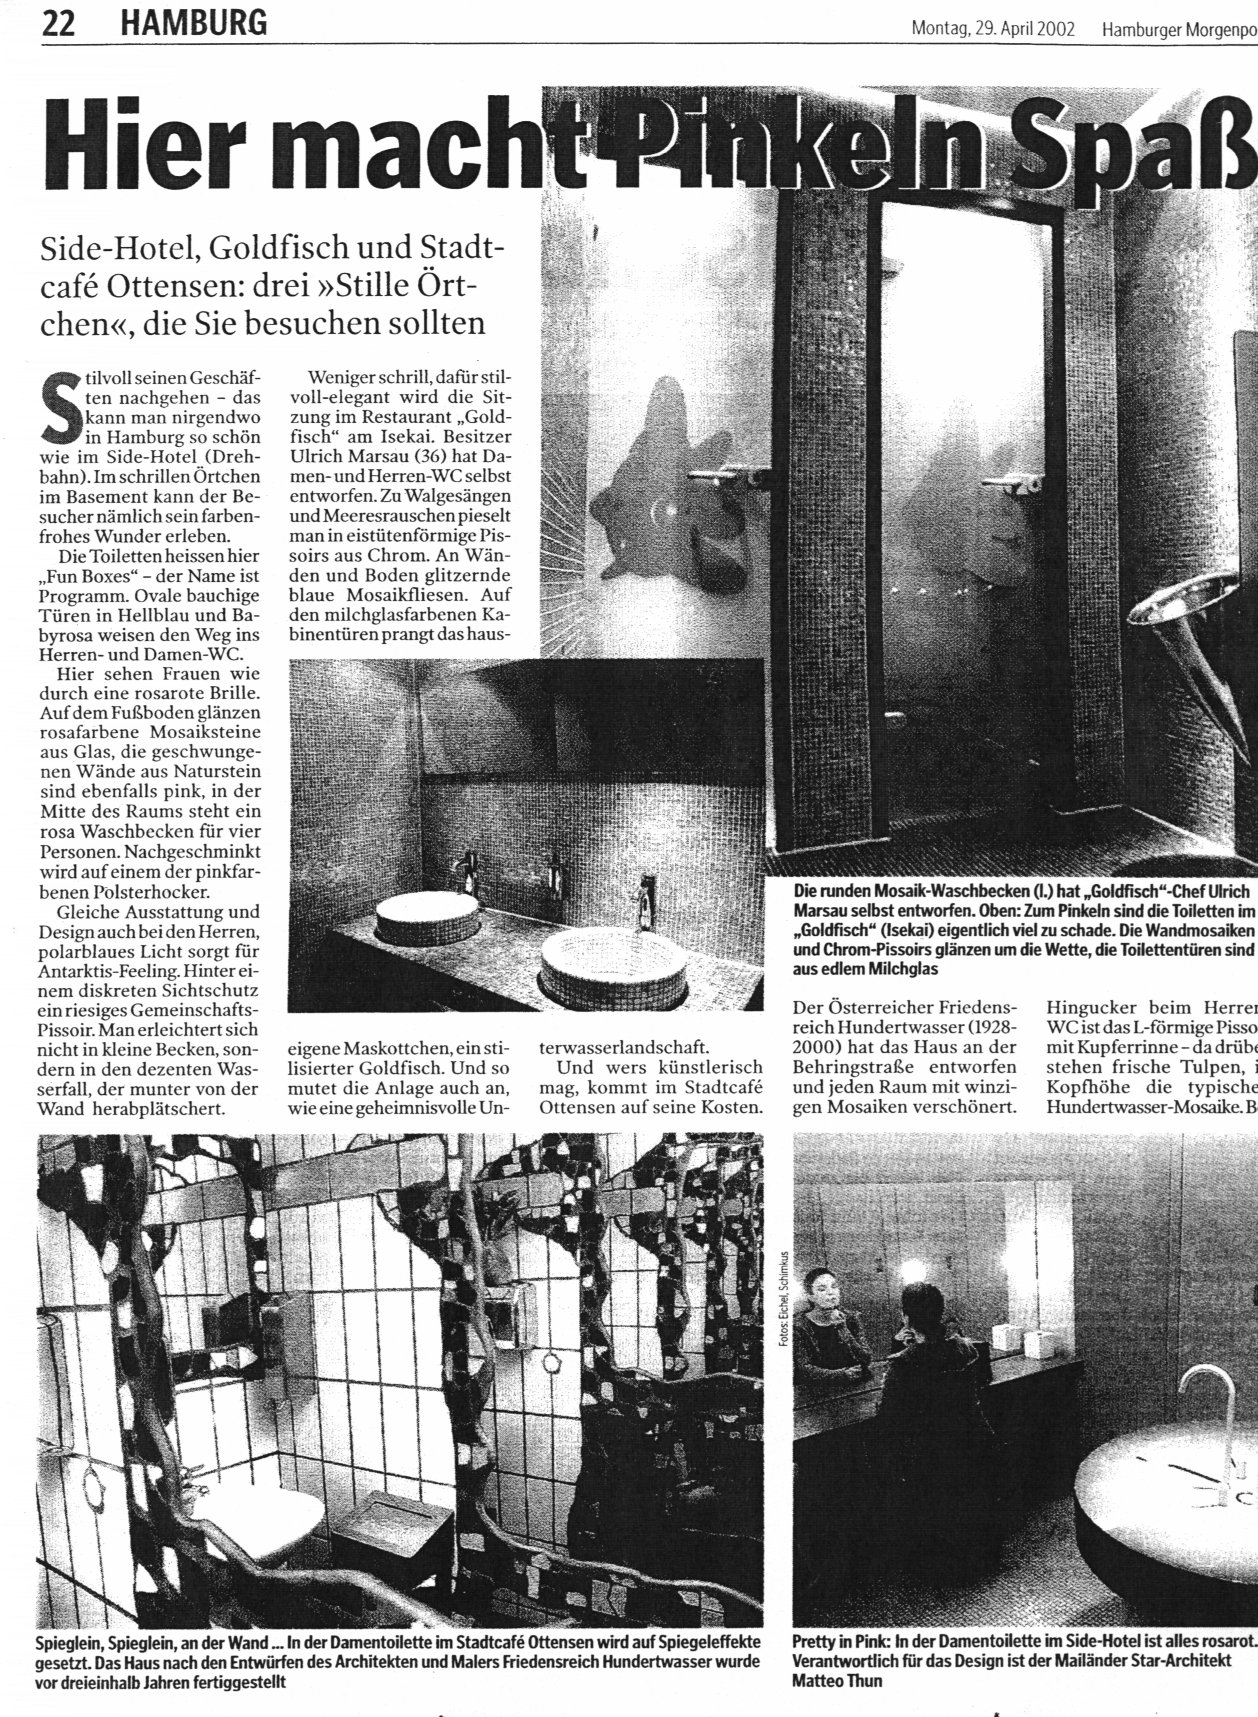 Hamburger Morgenpost vom 29.4.2002, Seite 22